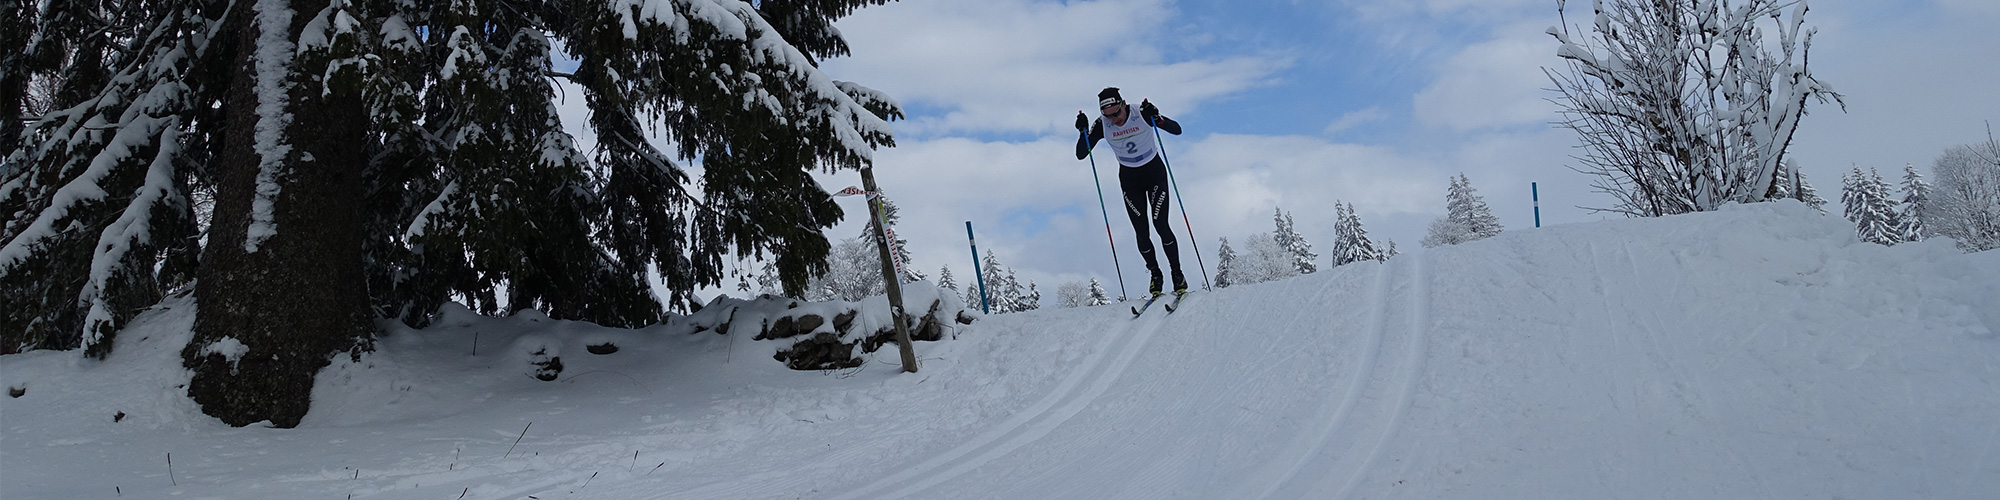 image de pistes de ski de fond